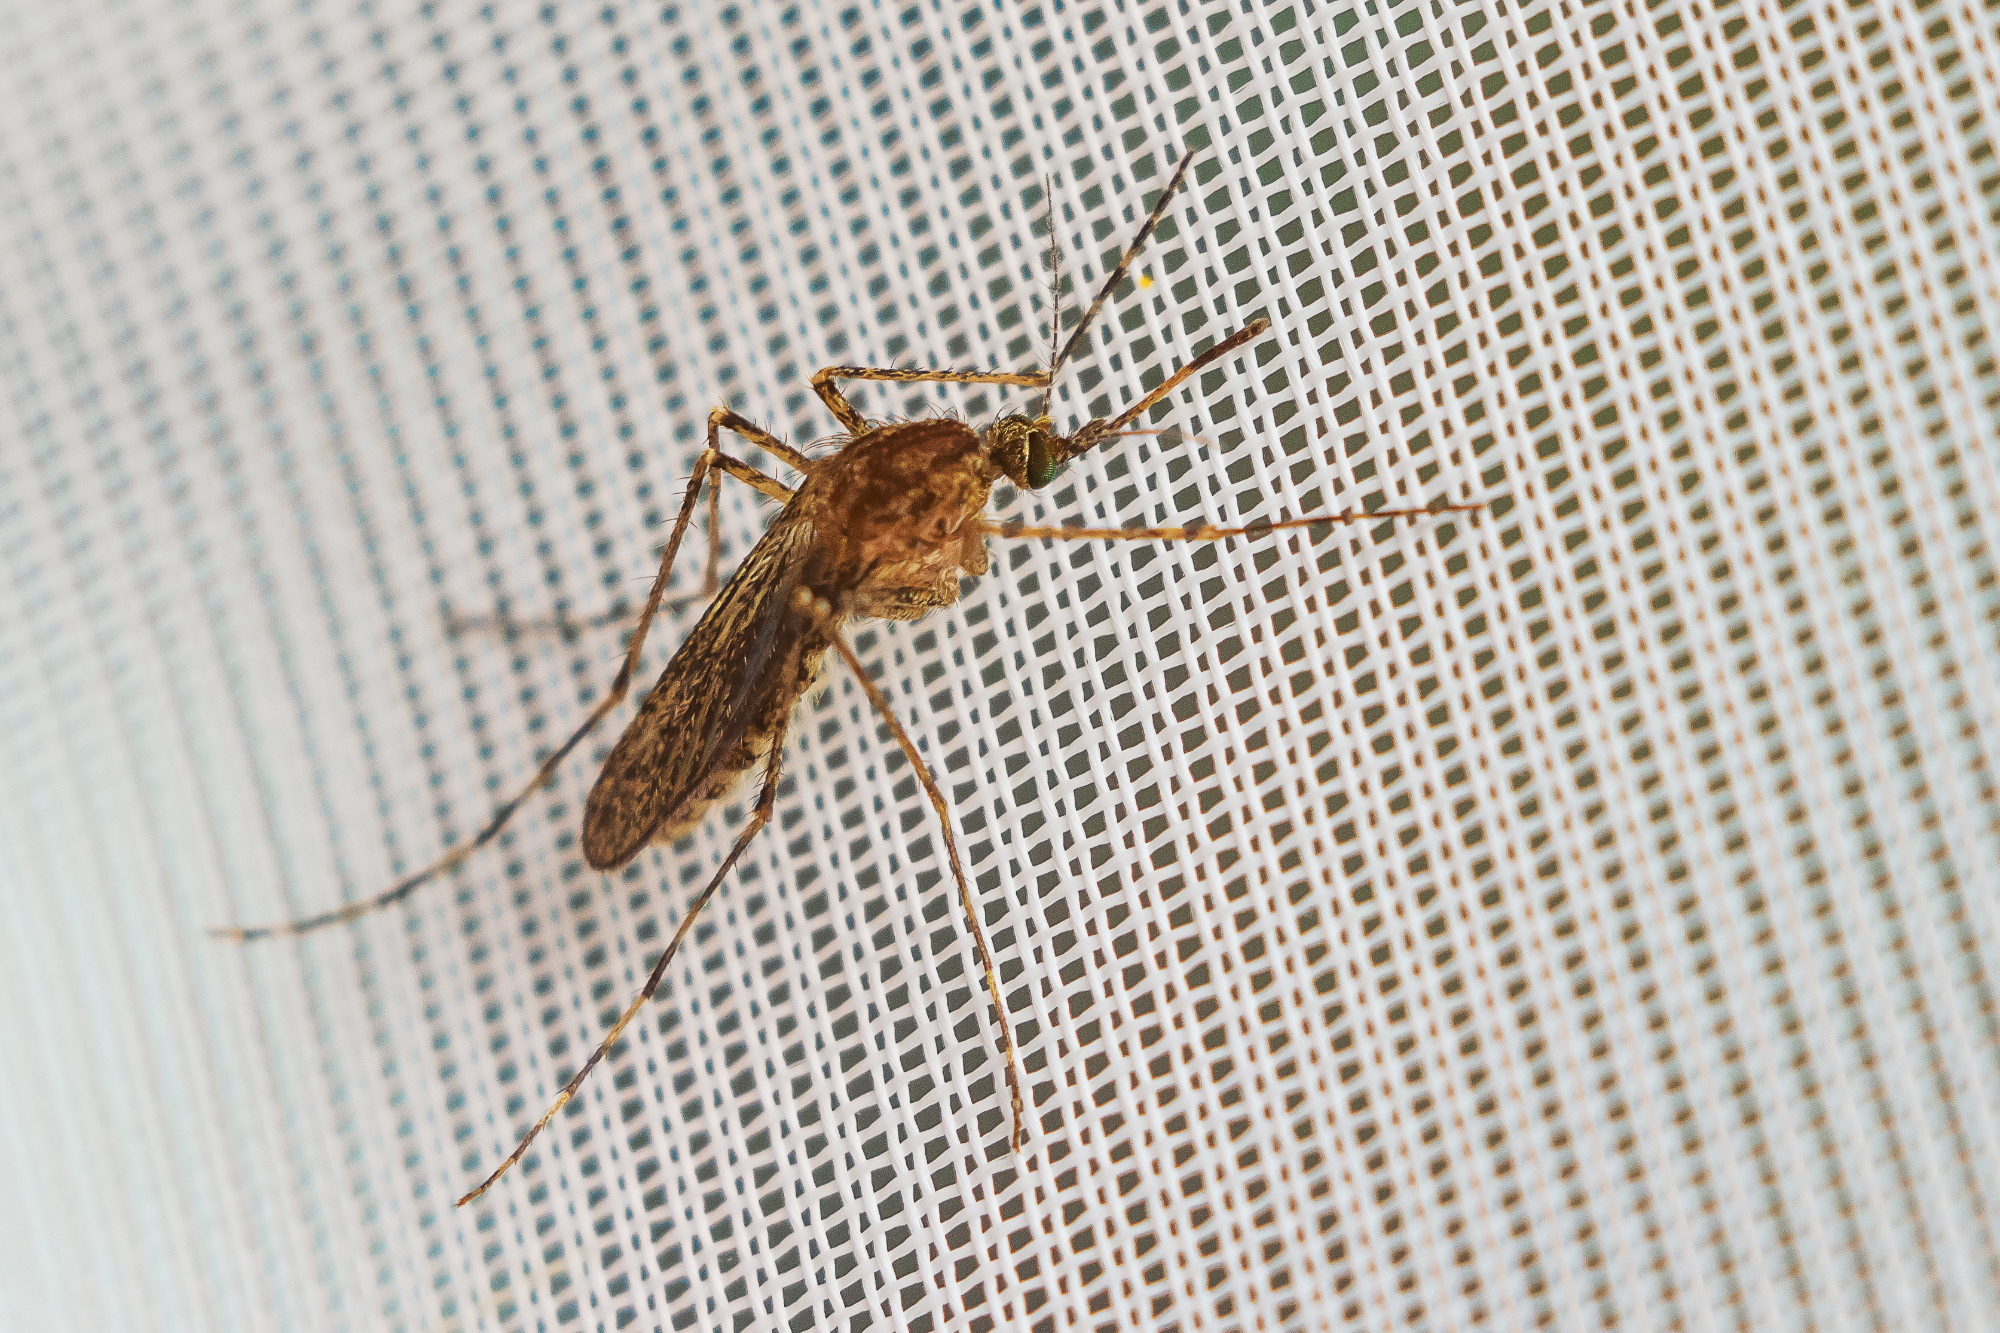 Komarniki so bila odlična rešitev za težave s komarji